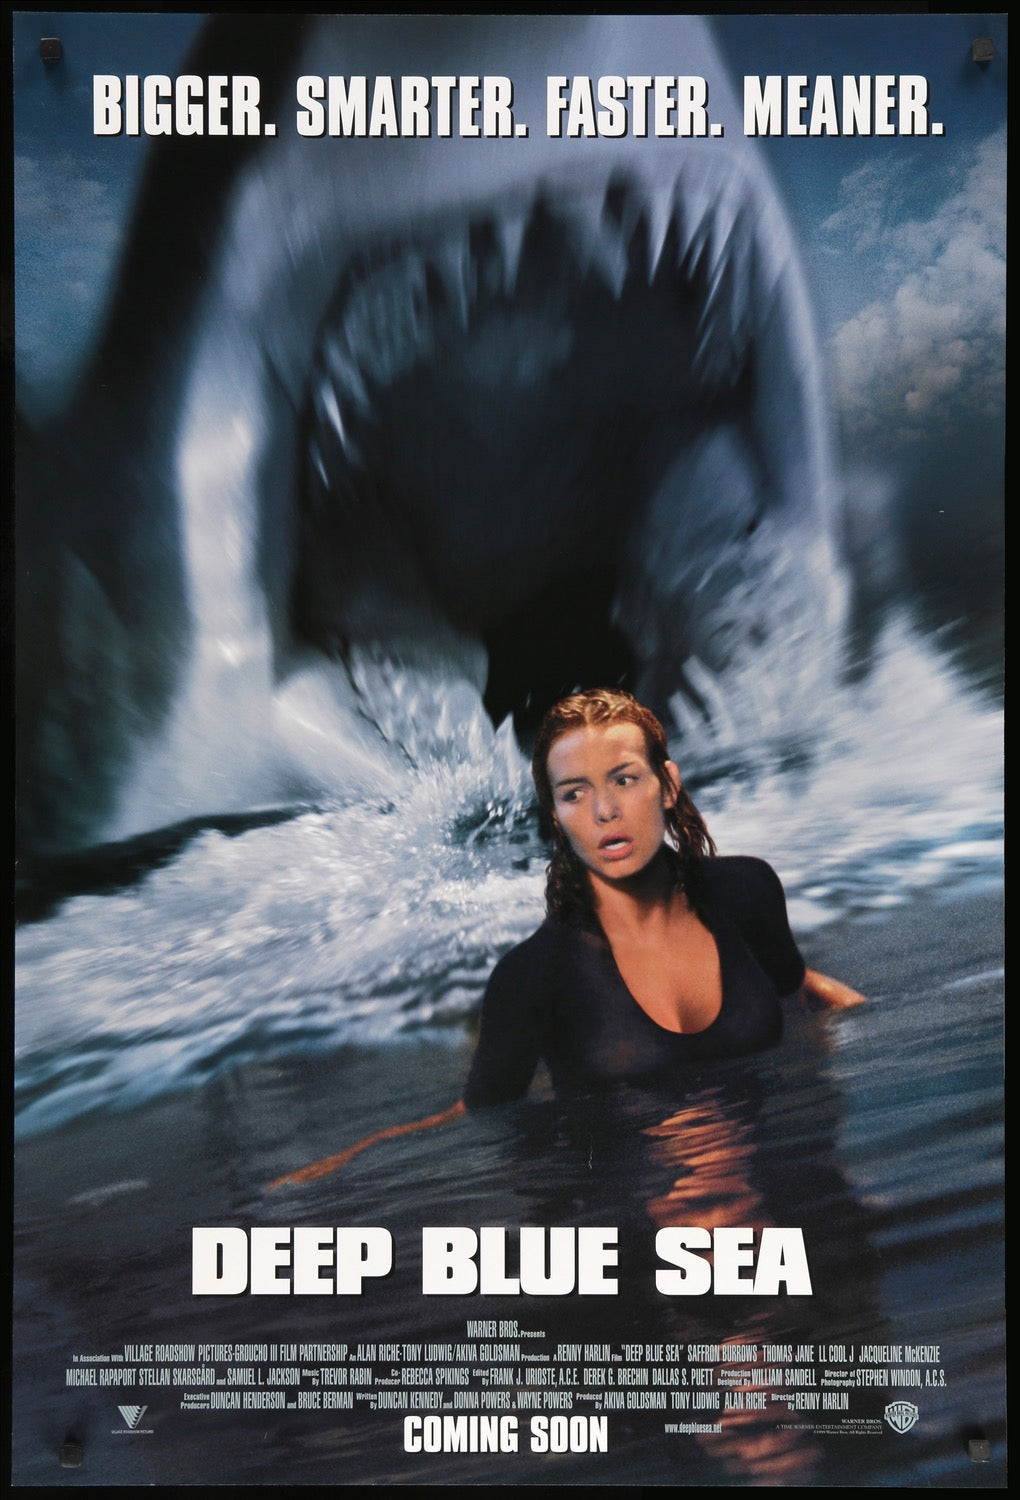 Deep Blue Sea (1999) original movie poster for sale at Original Film Art